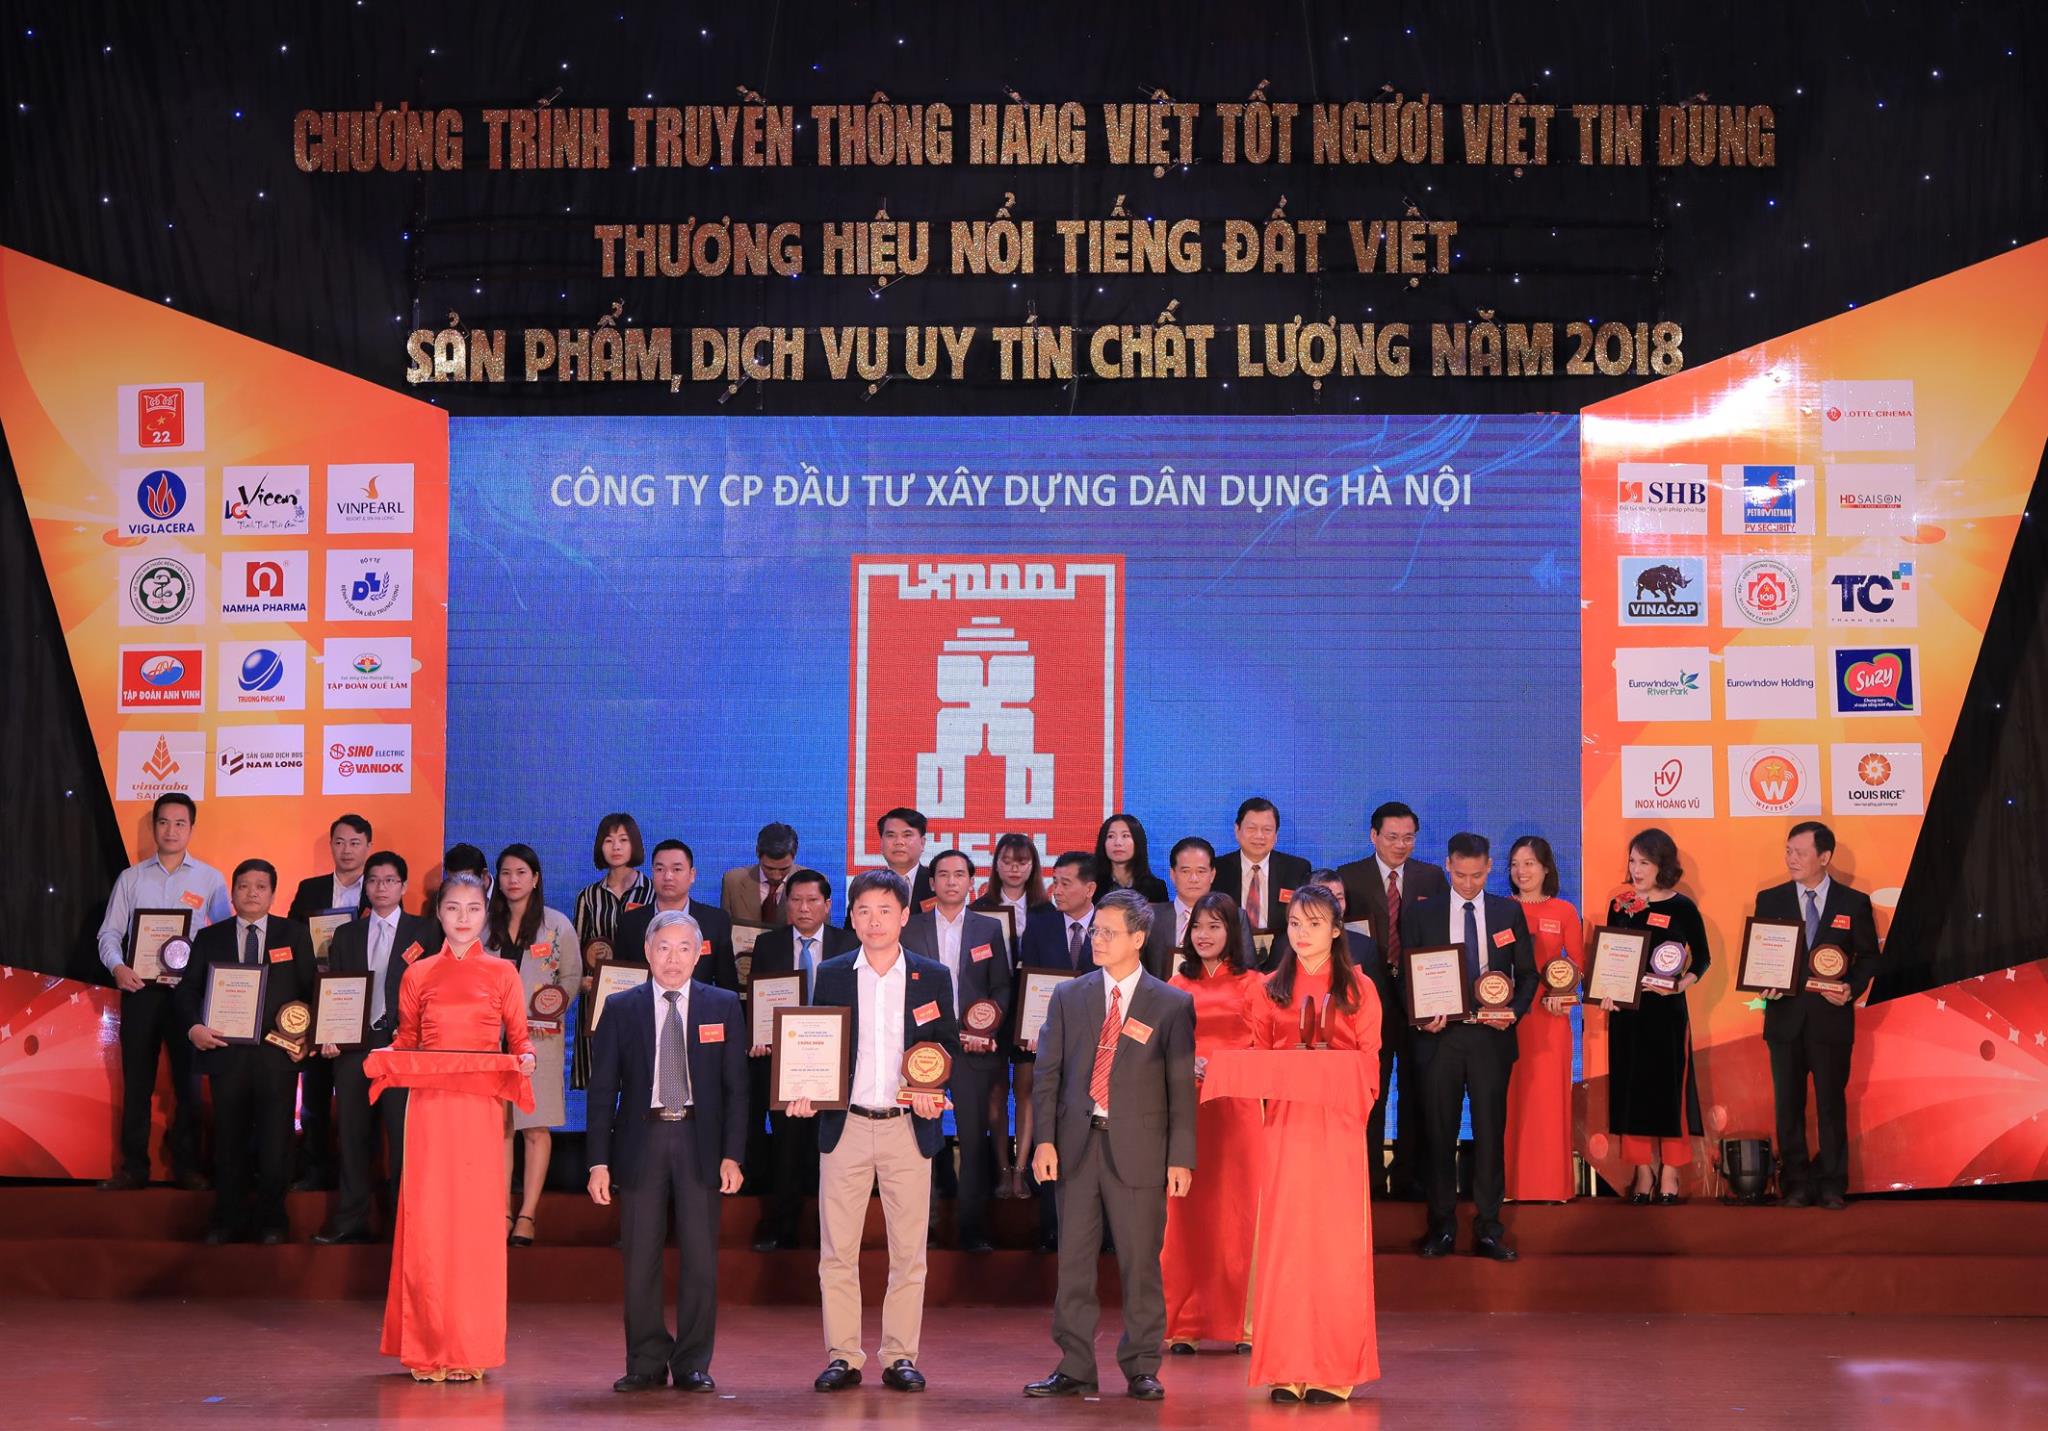 Thương hiệu nổi tiếng đất Việt năm 2018